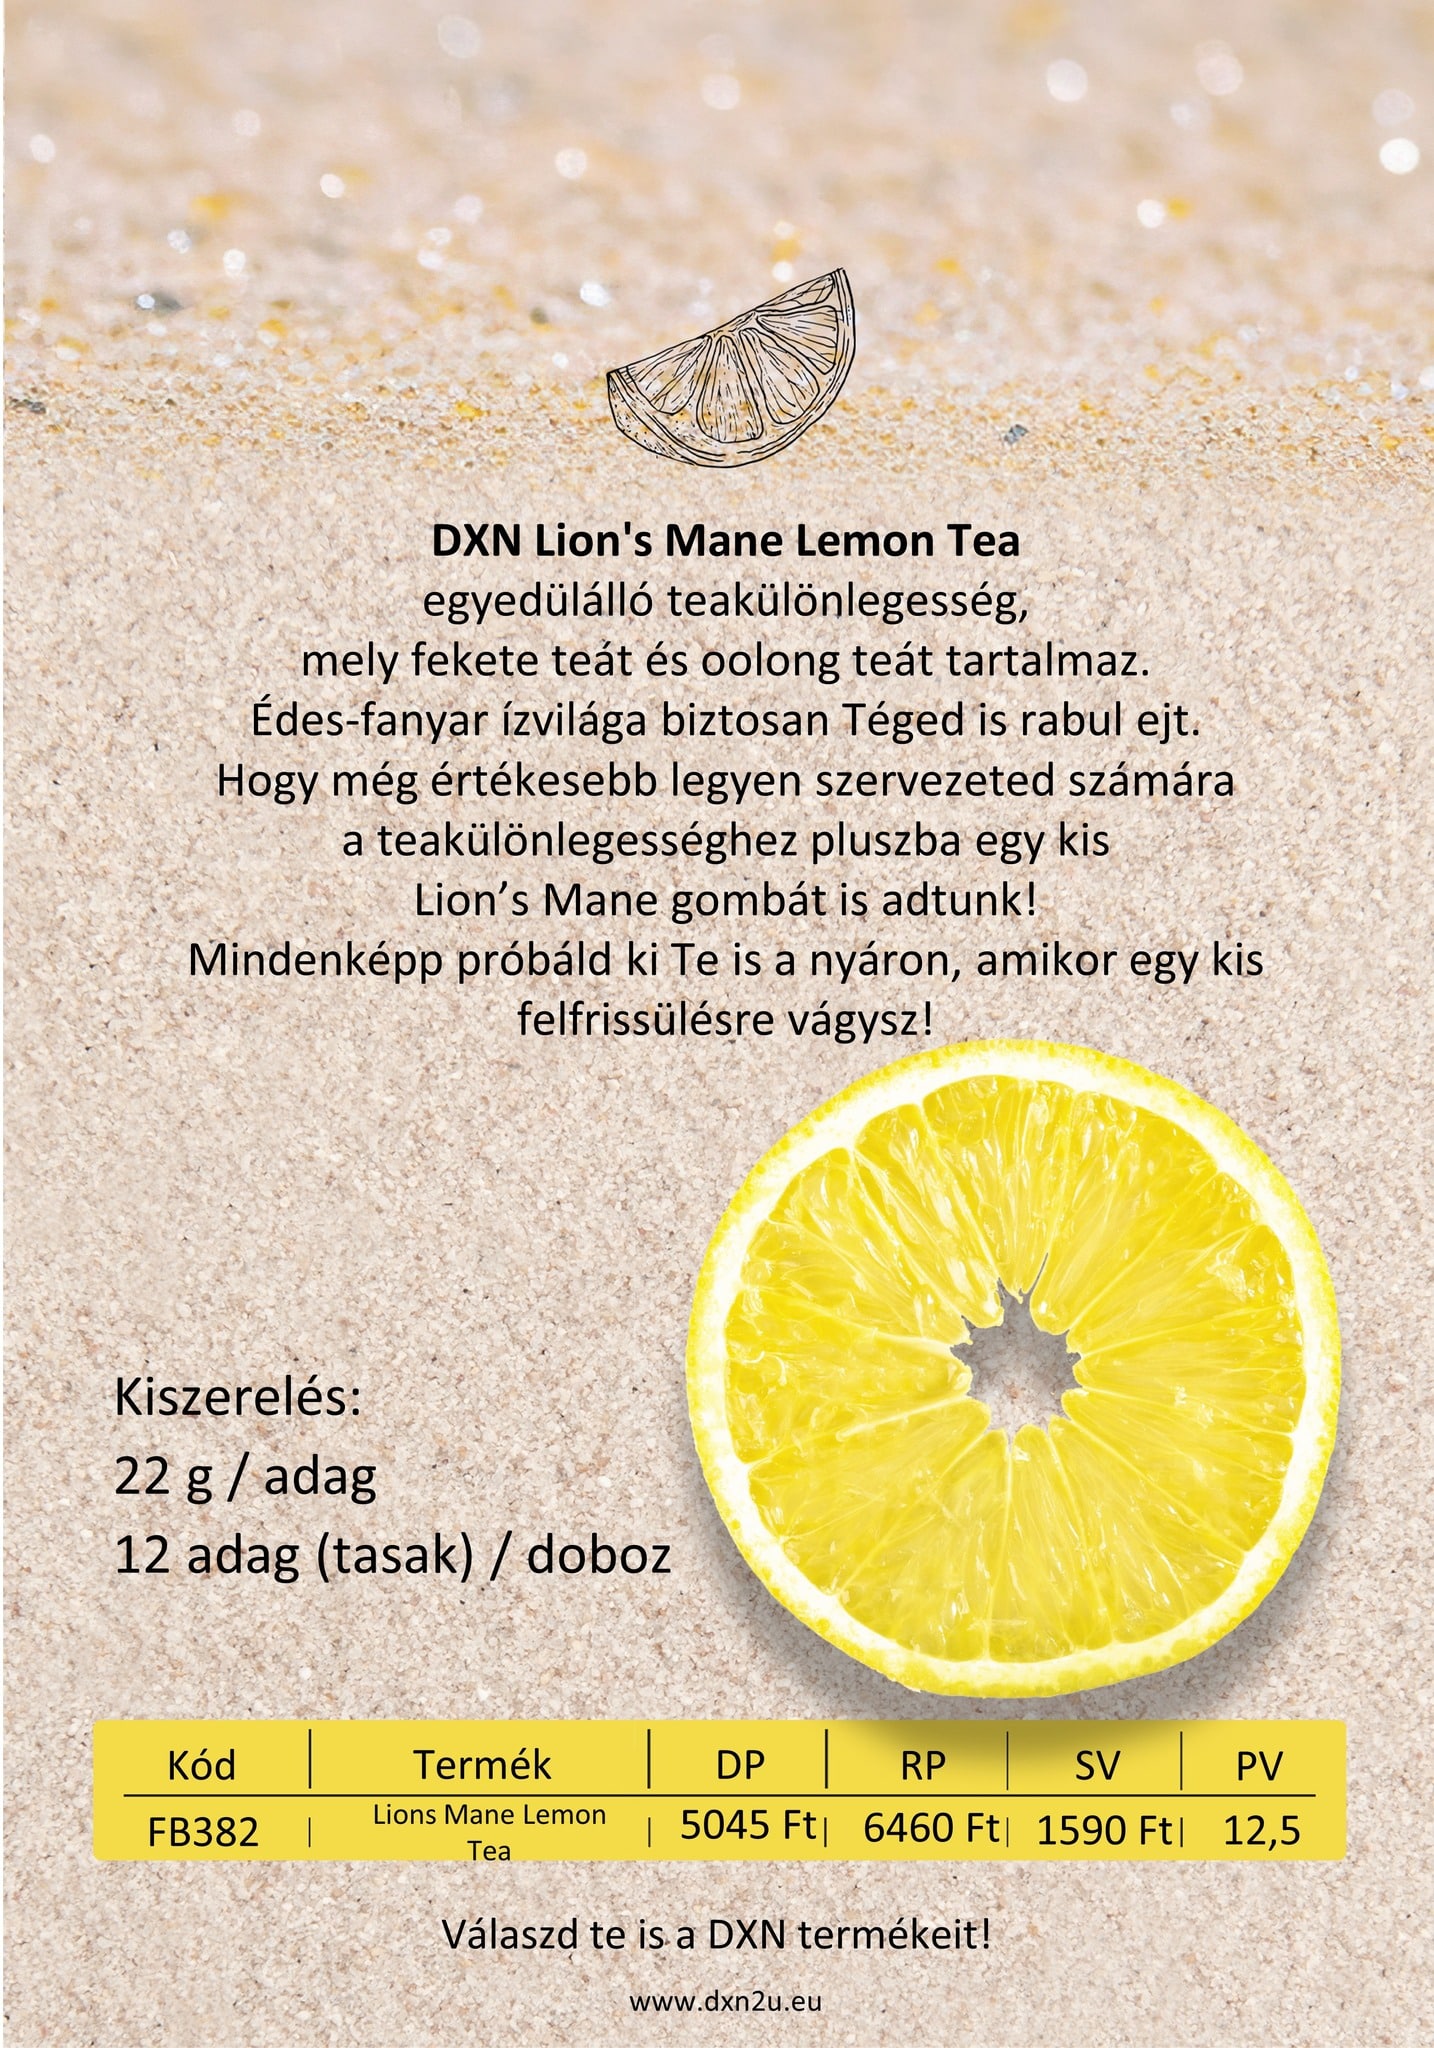 DXN Lion's Mane Lemon Tea